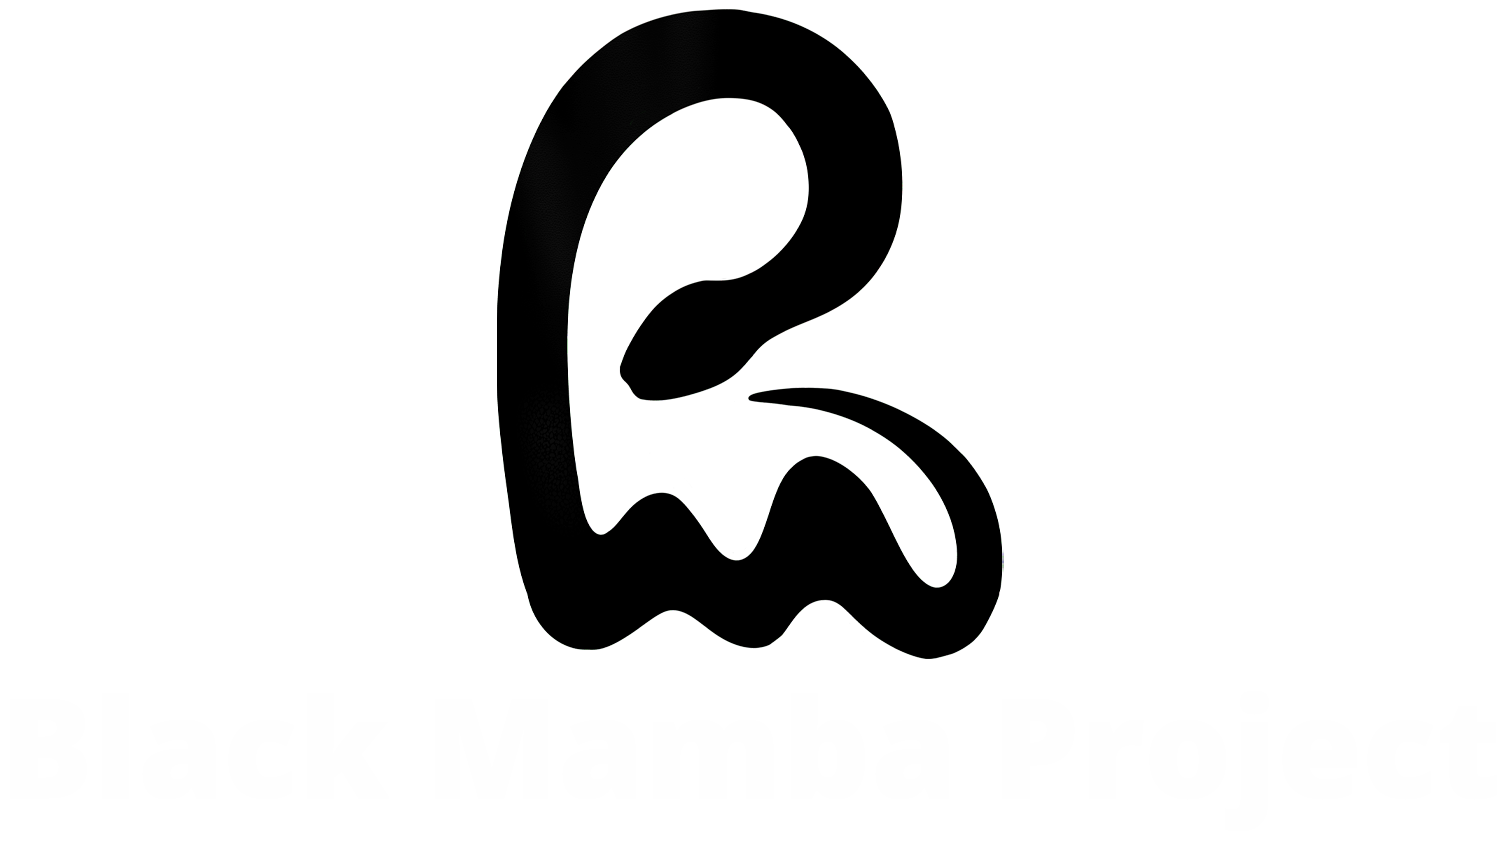 Black Mamba Project